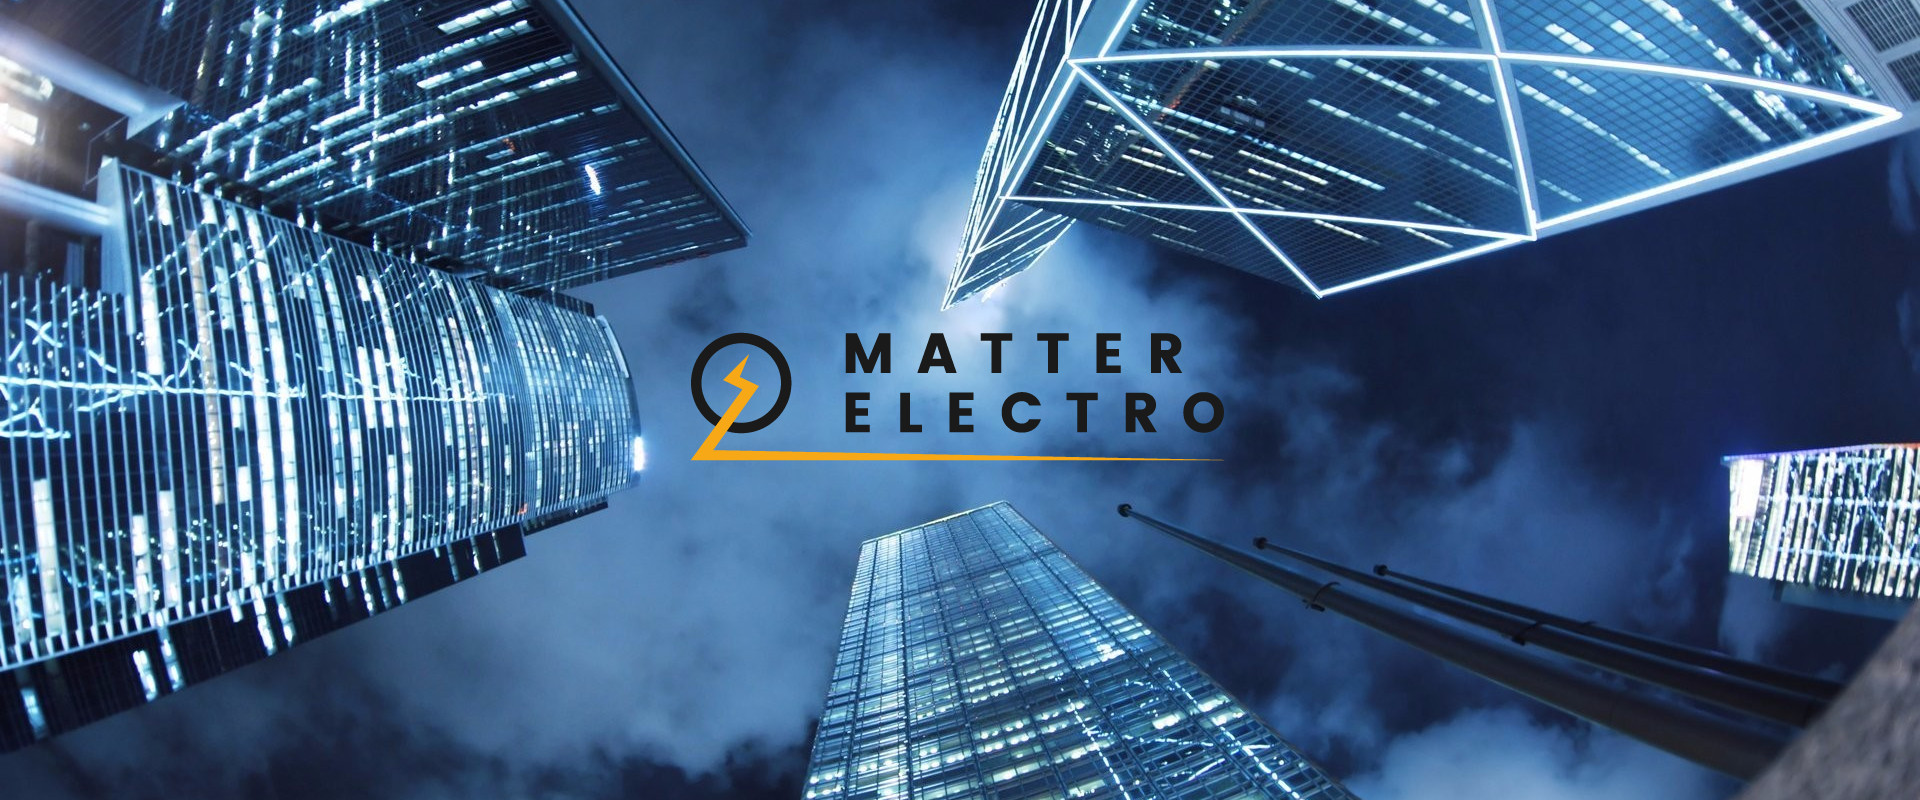 Matter Electro